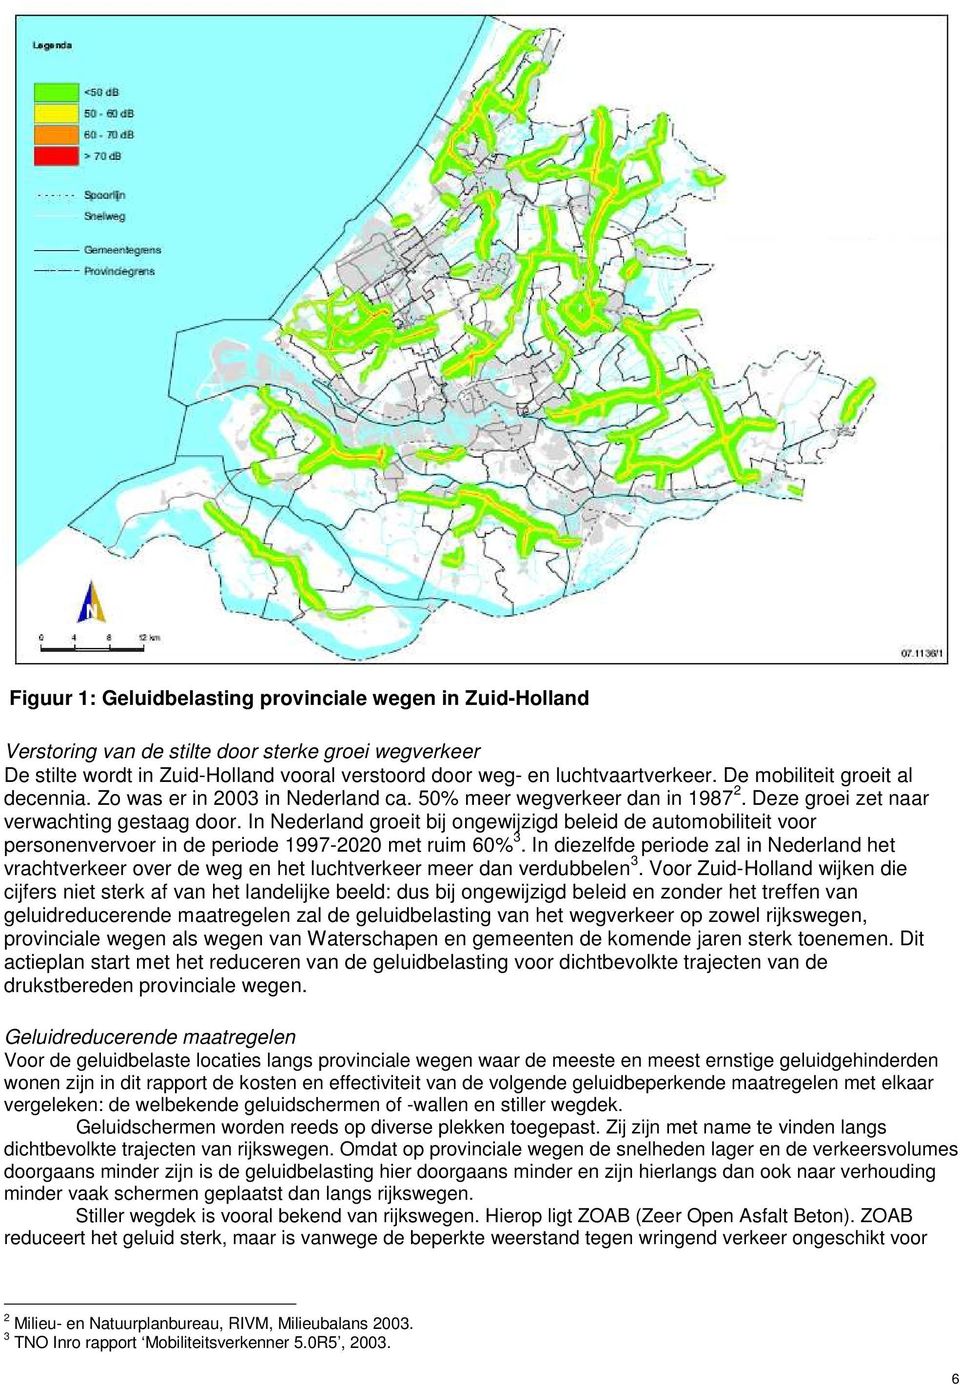 In Nederland groeit bij ongewijzigd beleid de automobiliteit voor personenvervoer in de periode 1997-2020 met ruim 60% 3.